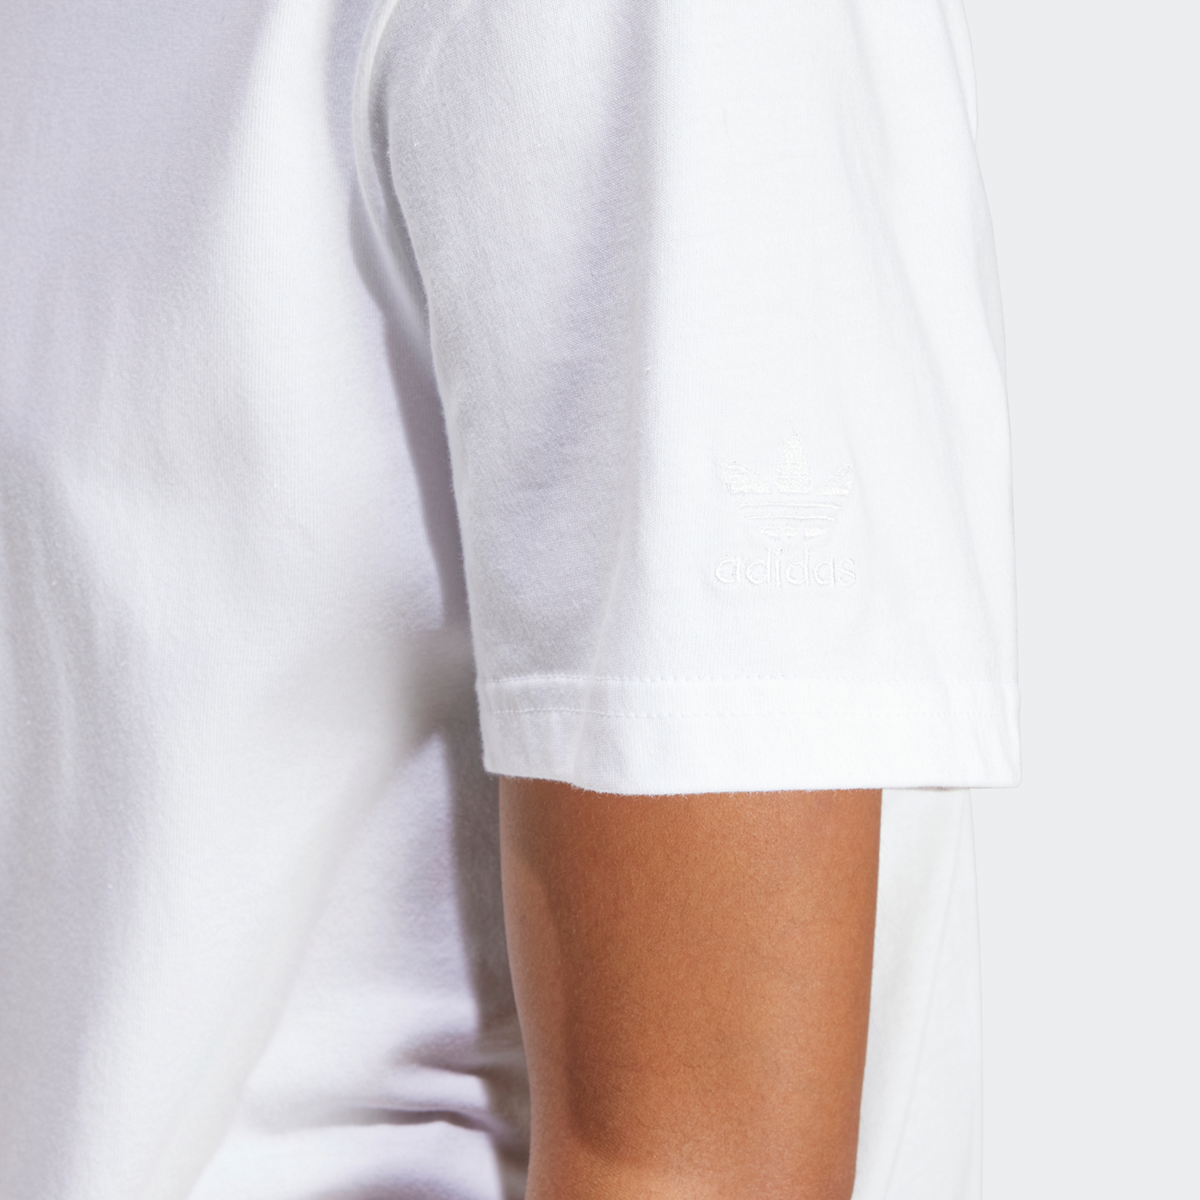 adidas Originals Adi Orbic Graphic Tee T-shirts Dames white maat: S beschikbare maaten:XS S M L